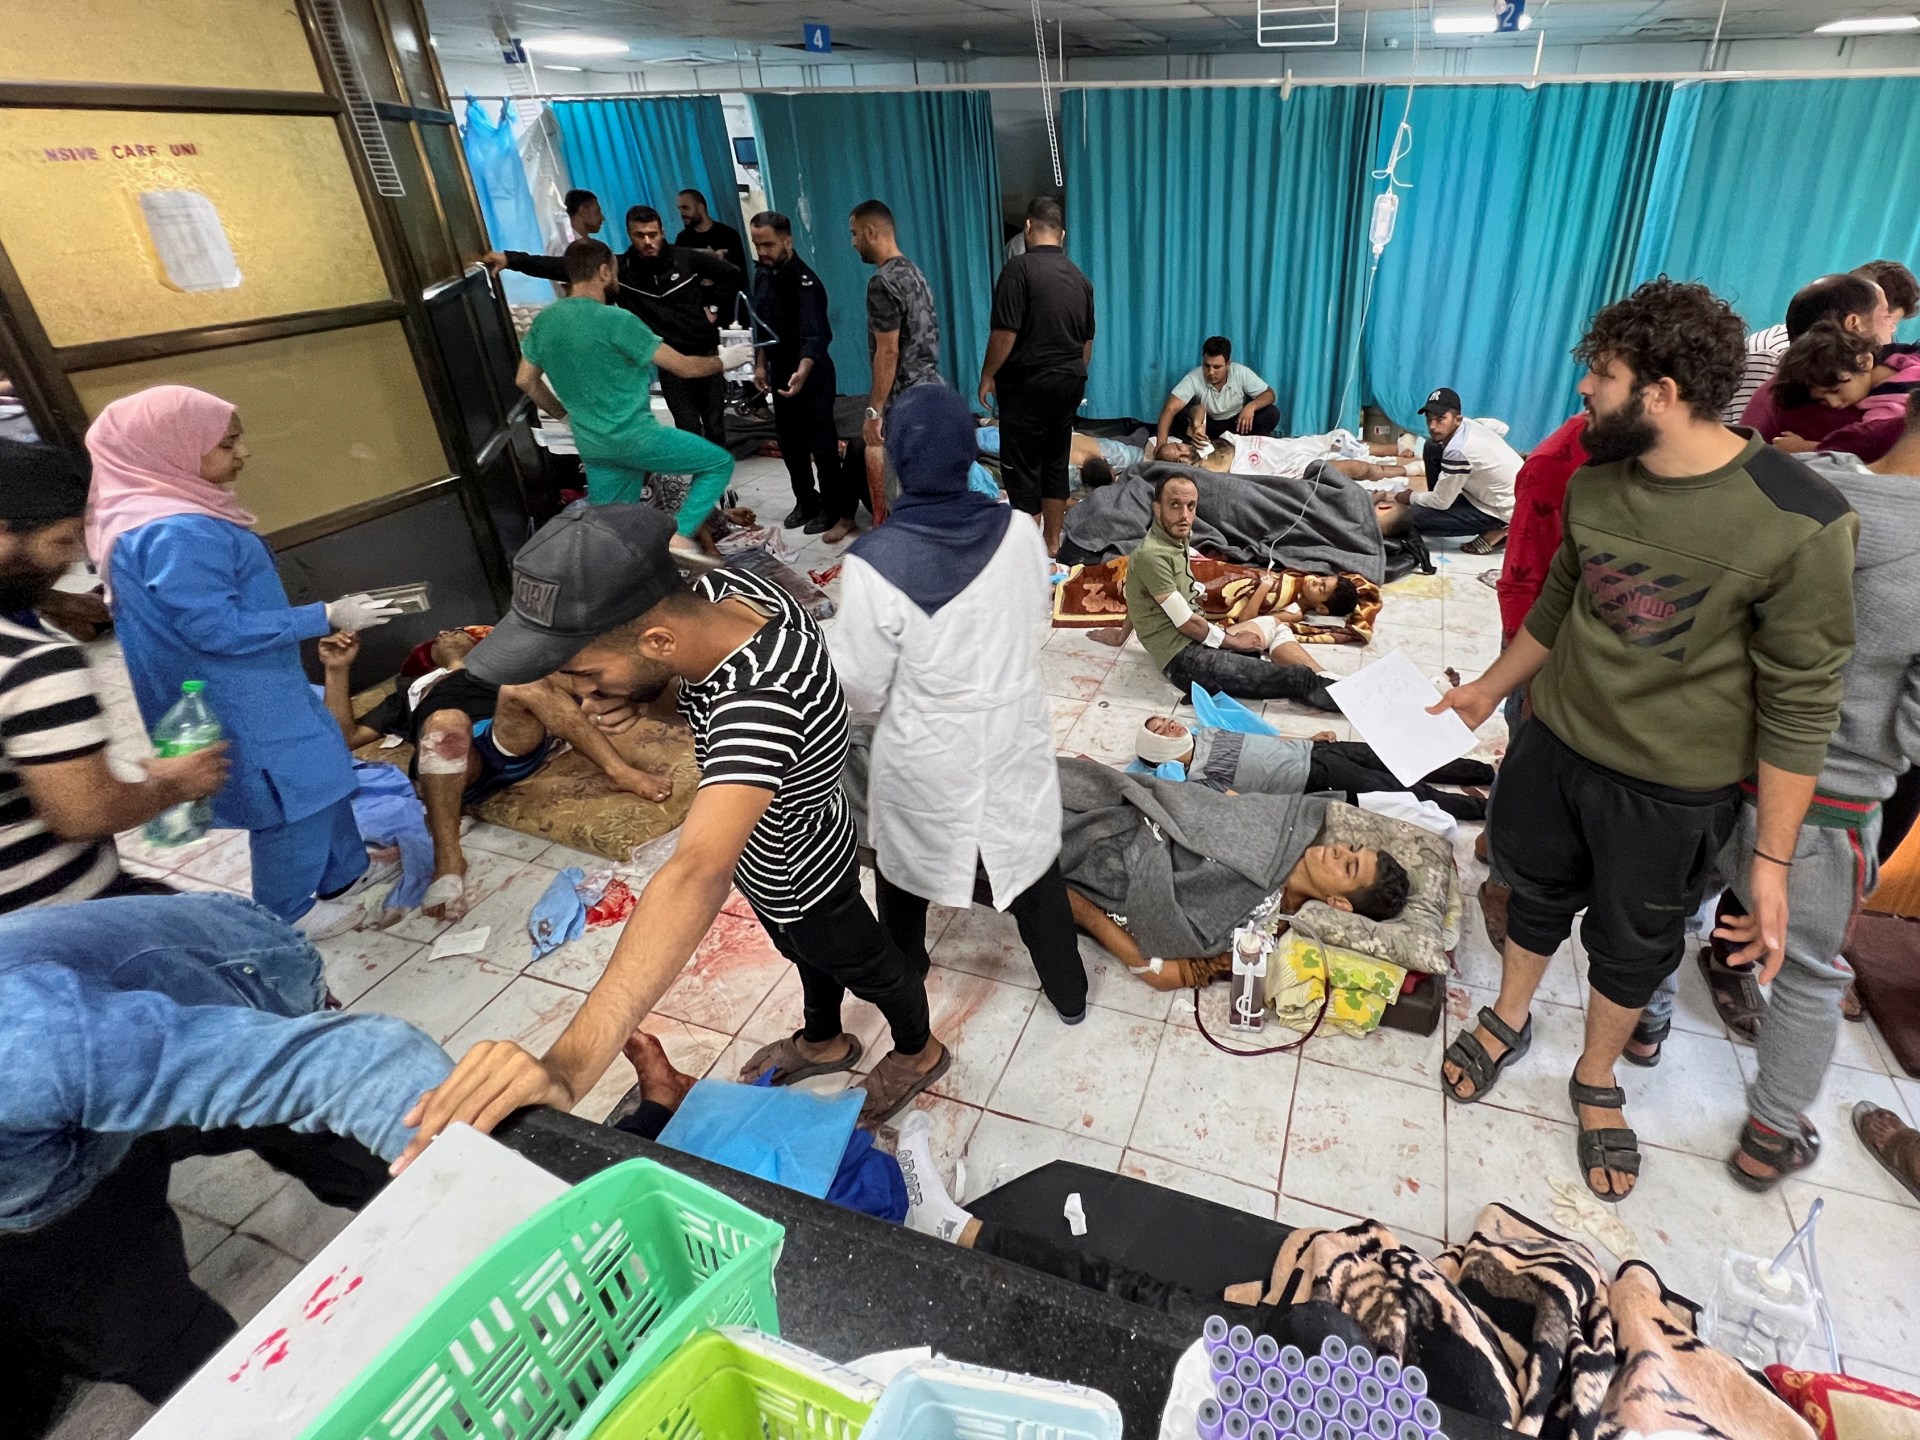 إجلاء 200 مريض من المستشفى الإندونيسي بغزة وجاكرتا ترسل إمدادات طبية | أخبار – البوكس نيوز